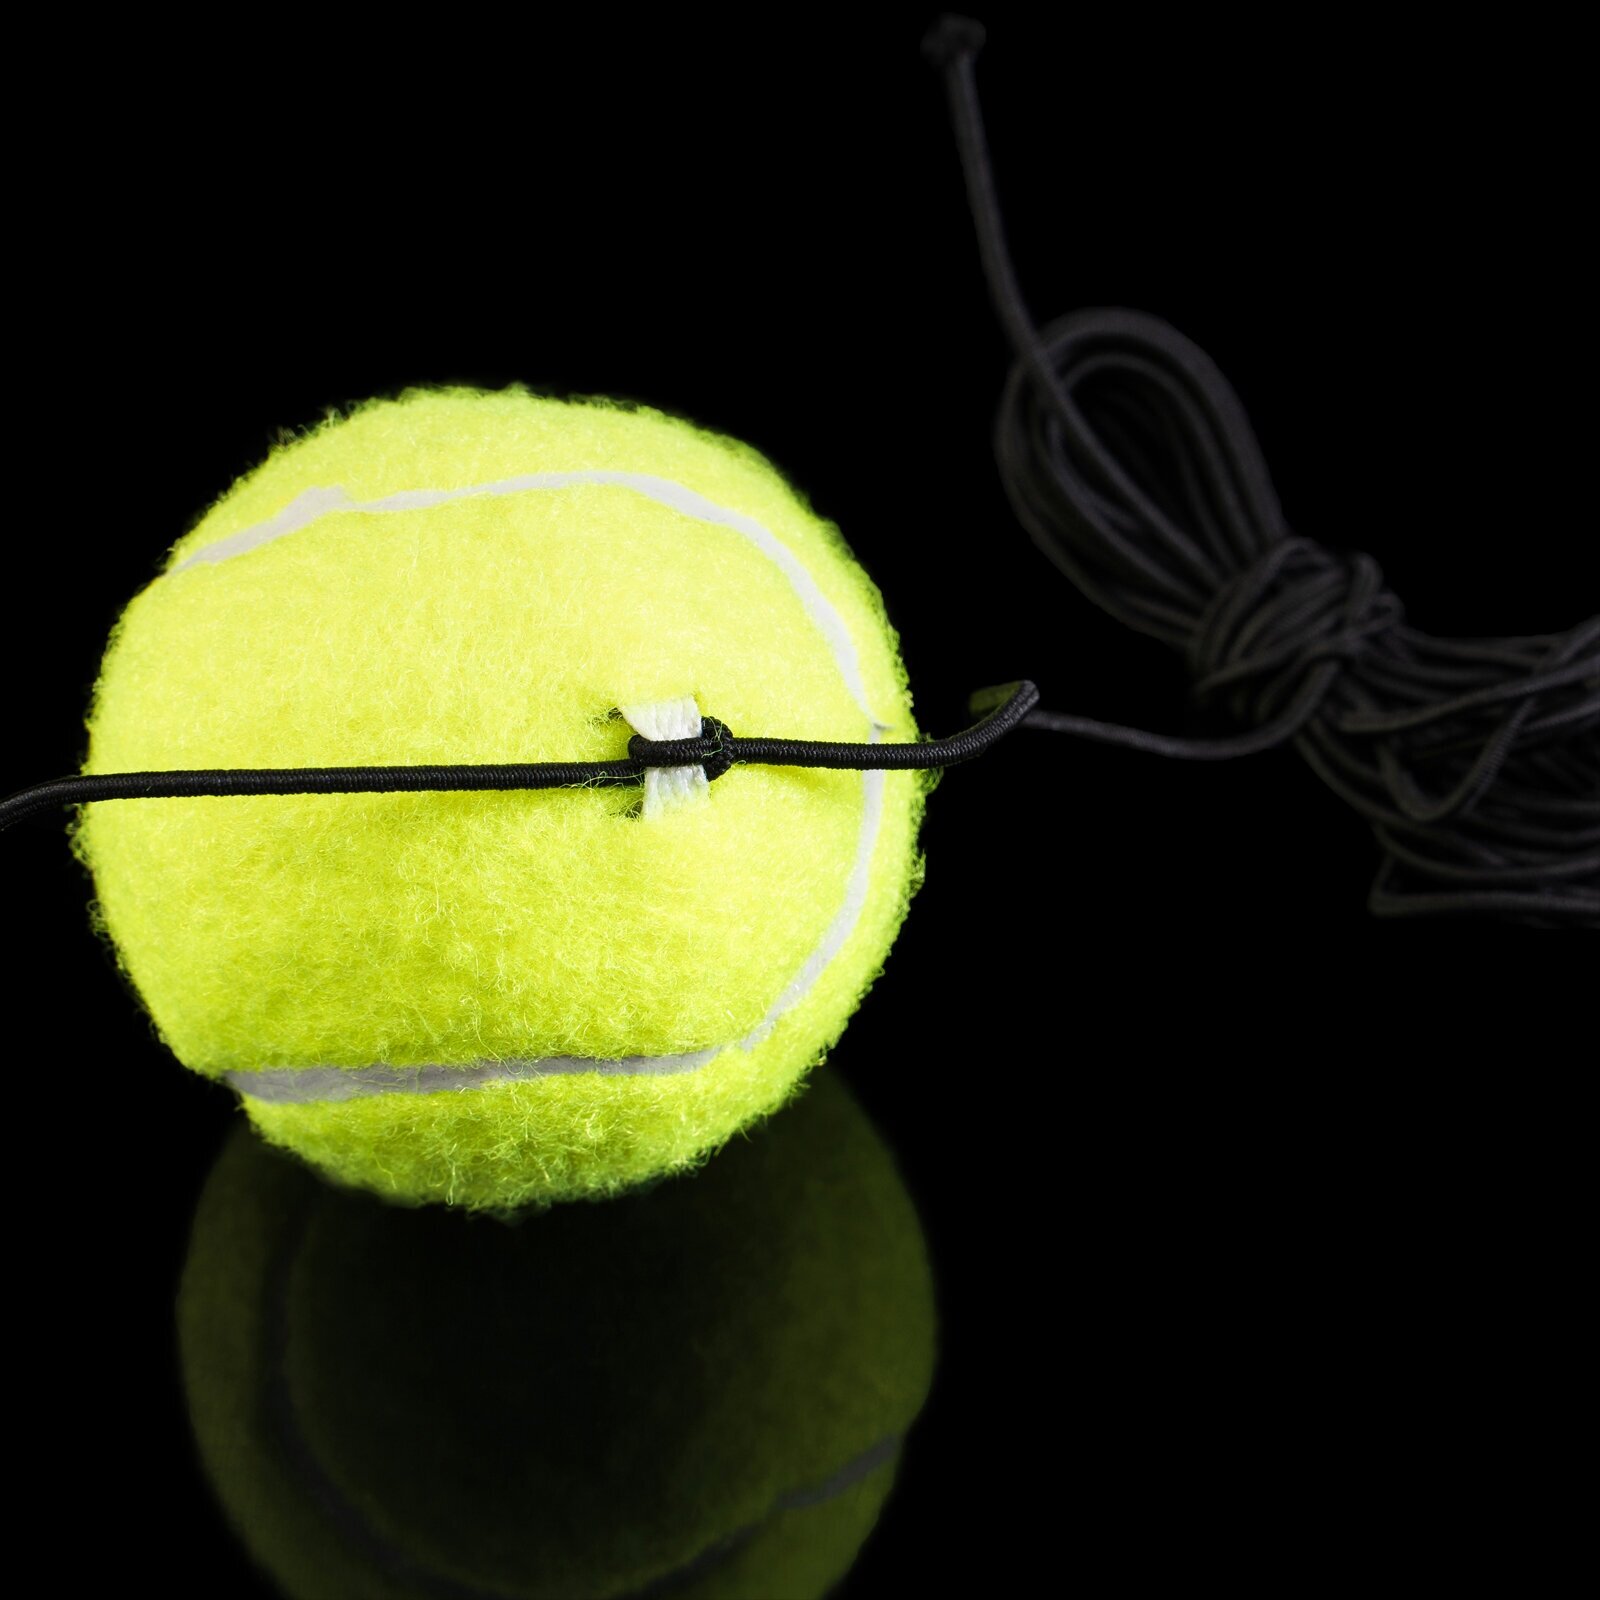 Мяч ONLYTOP, для большого тенниса, с резинкой, тренировочный, цвет желтый